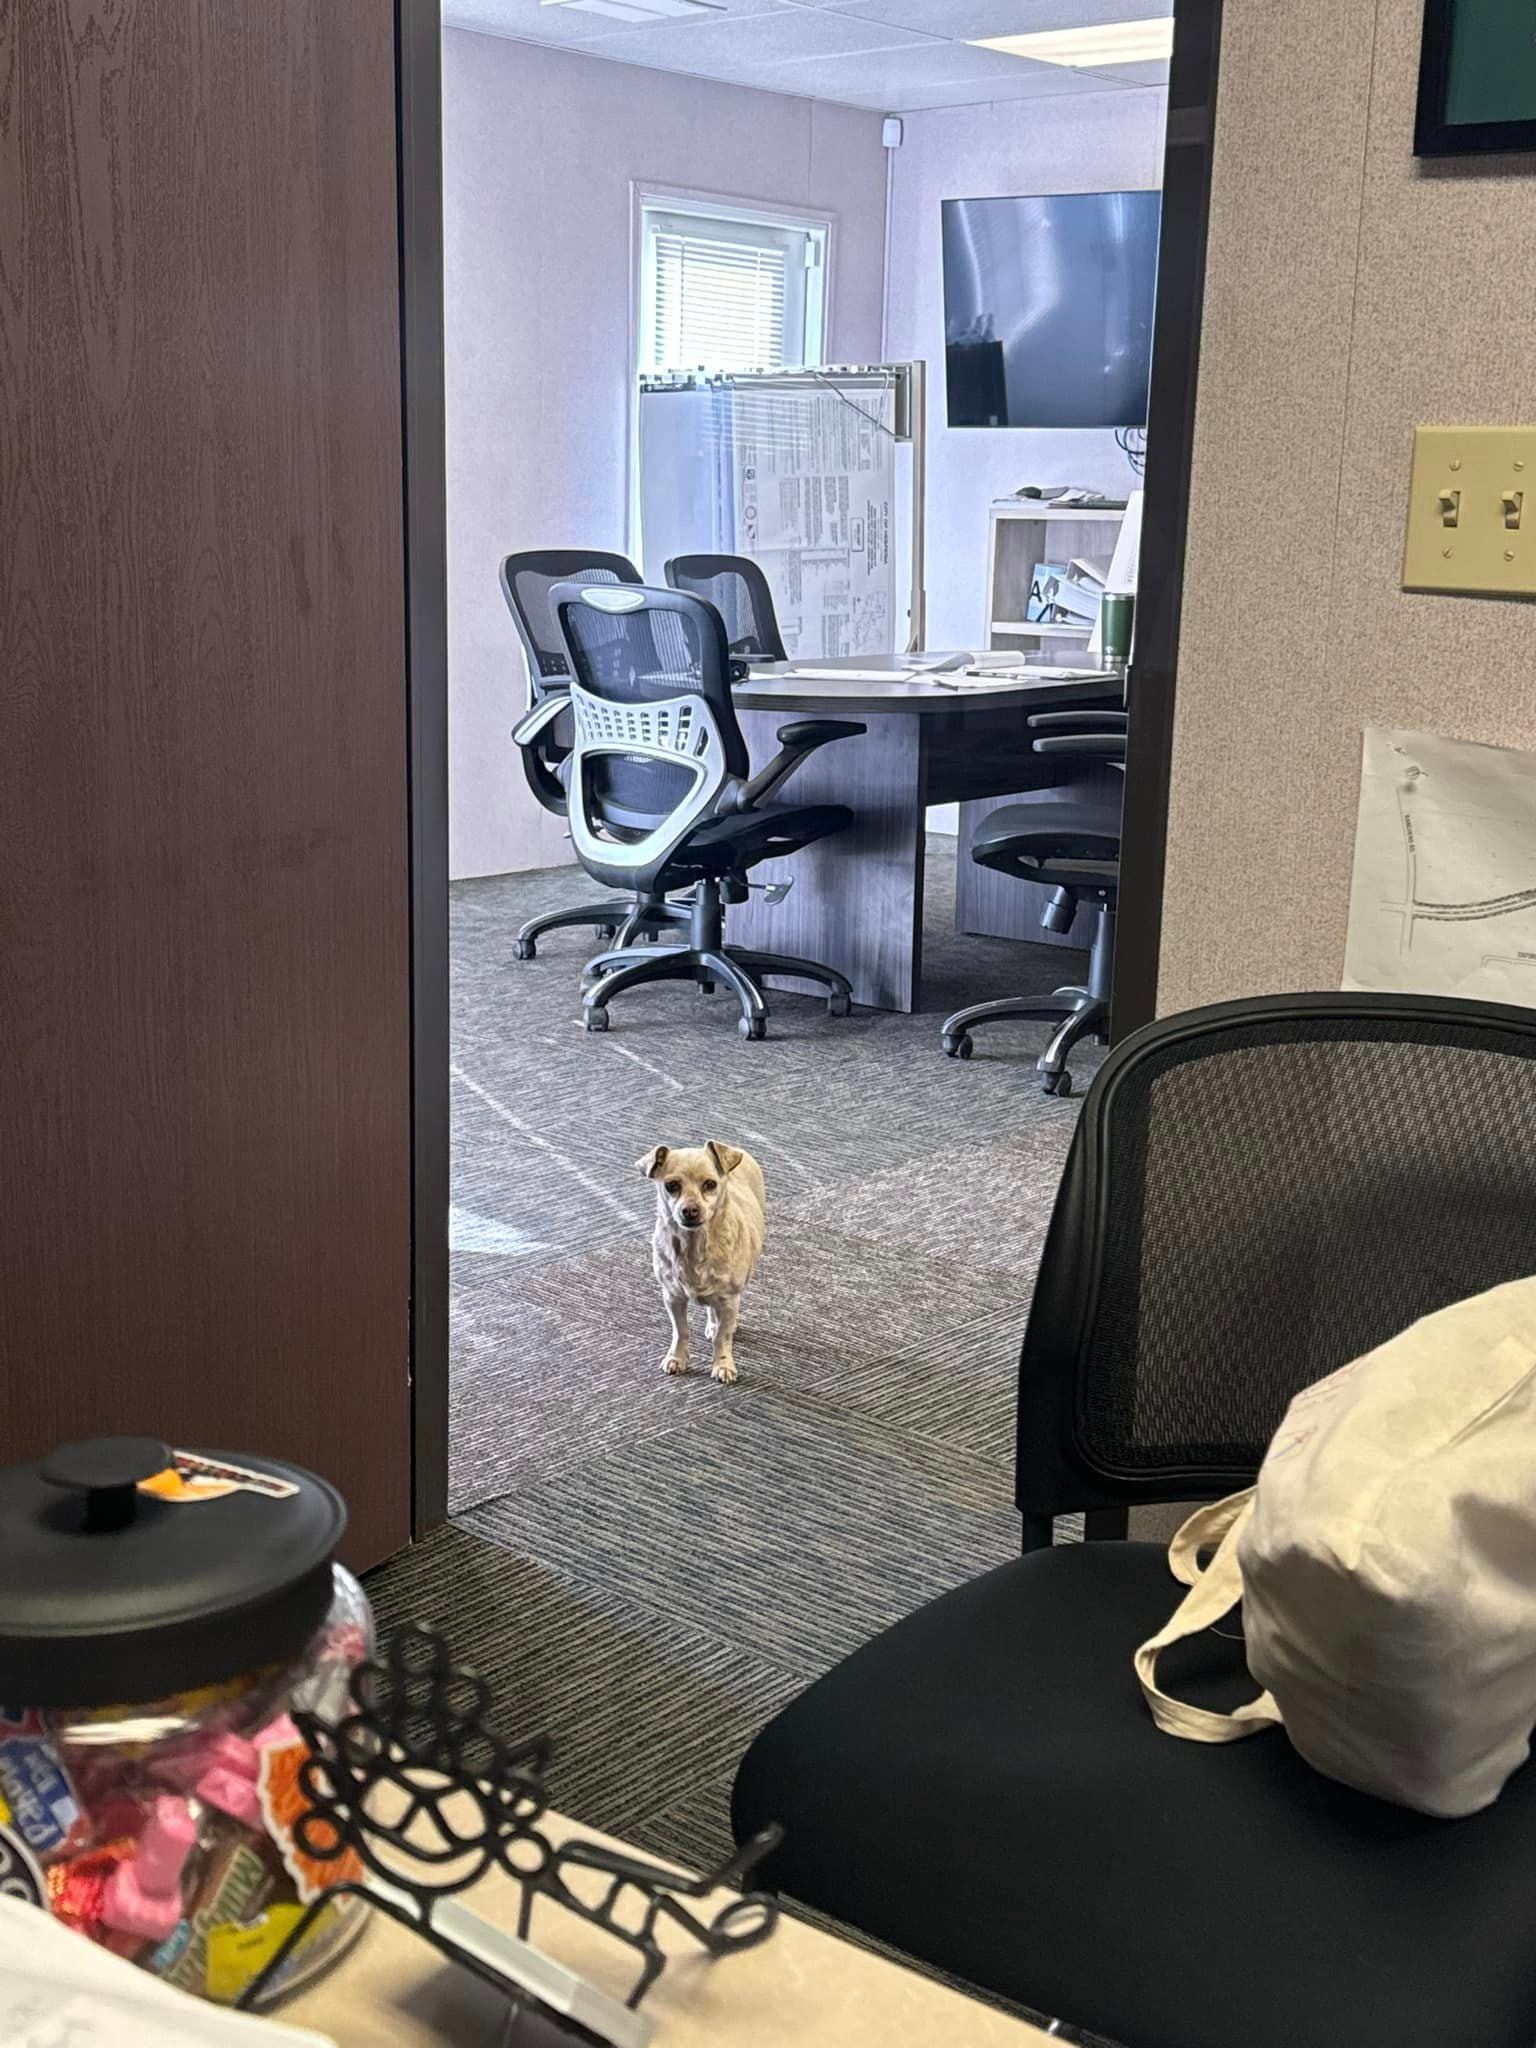 cachorra pequena e de pelagem clara parada na porta de um escritório